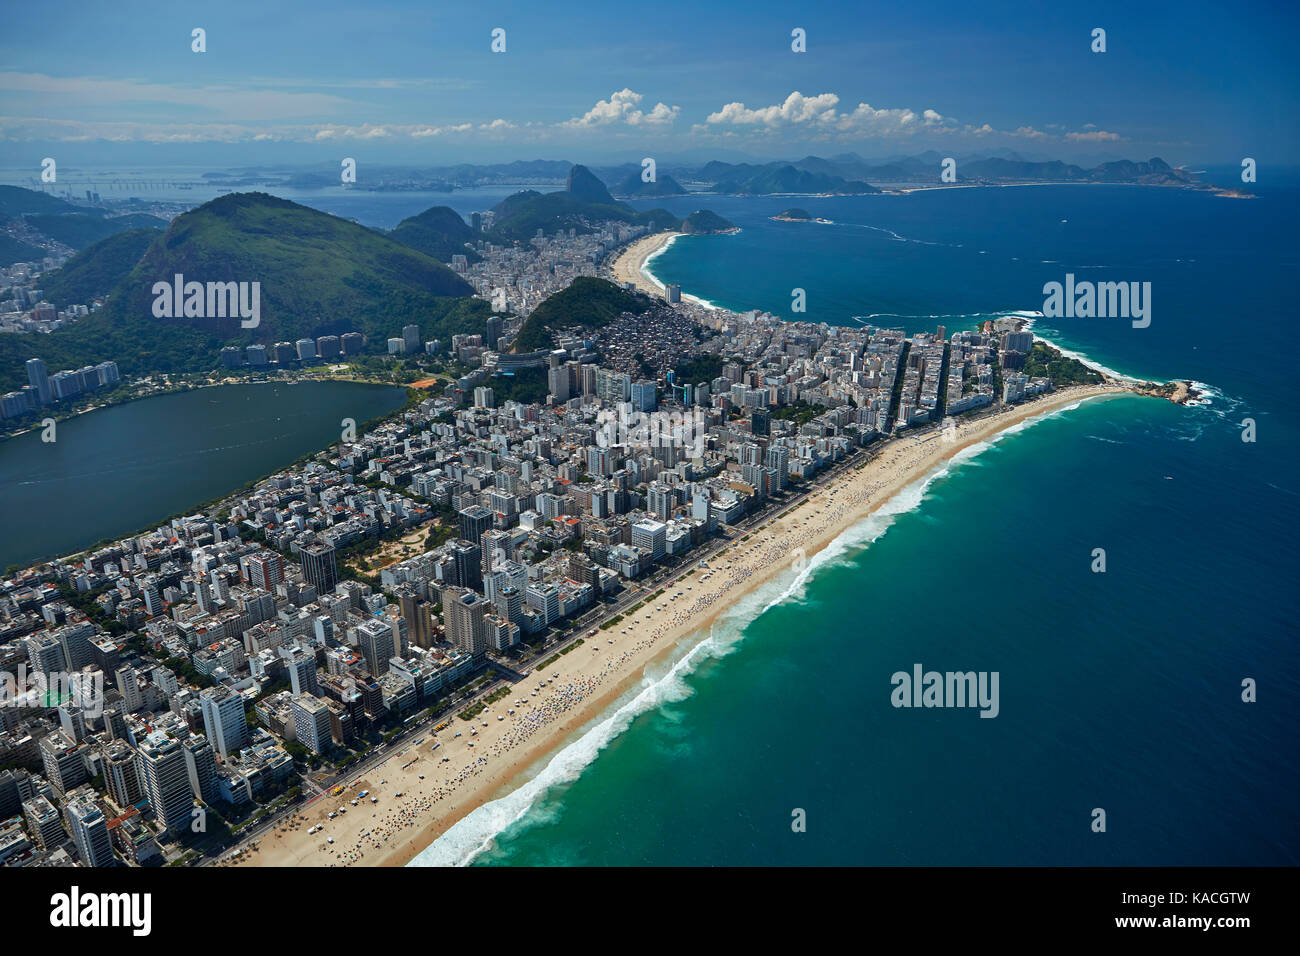 Die Leute am Strand von Ipanema, Lagoa Rodrigo de Freitas (links) und die Copacabana (oben), Rio de Janeiro, Brasilien, Südamerika - Antenne Stockfoto